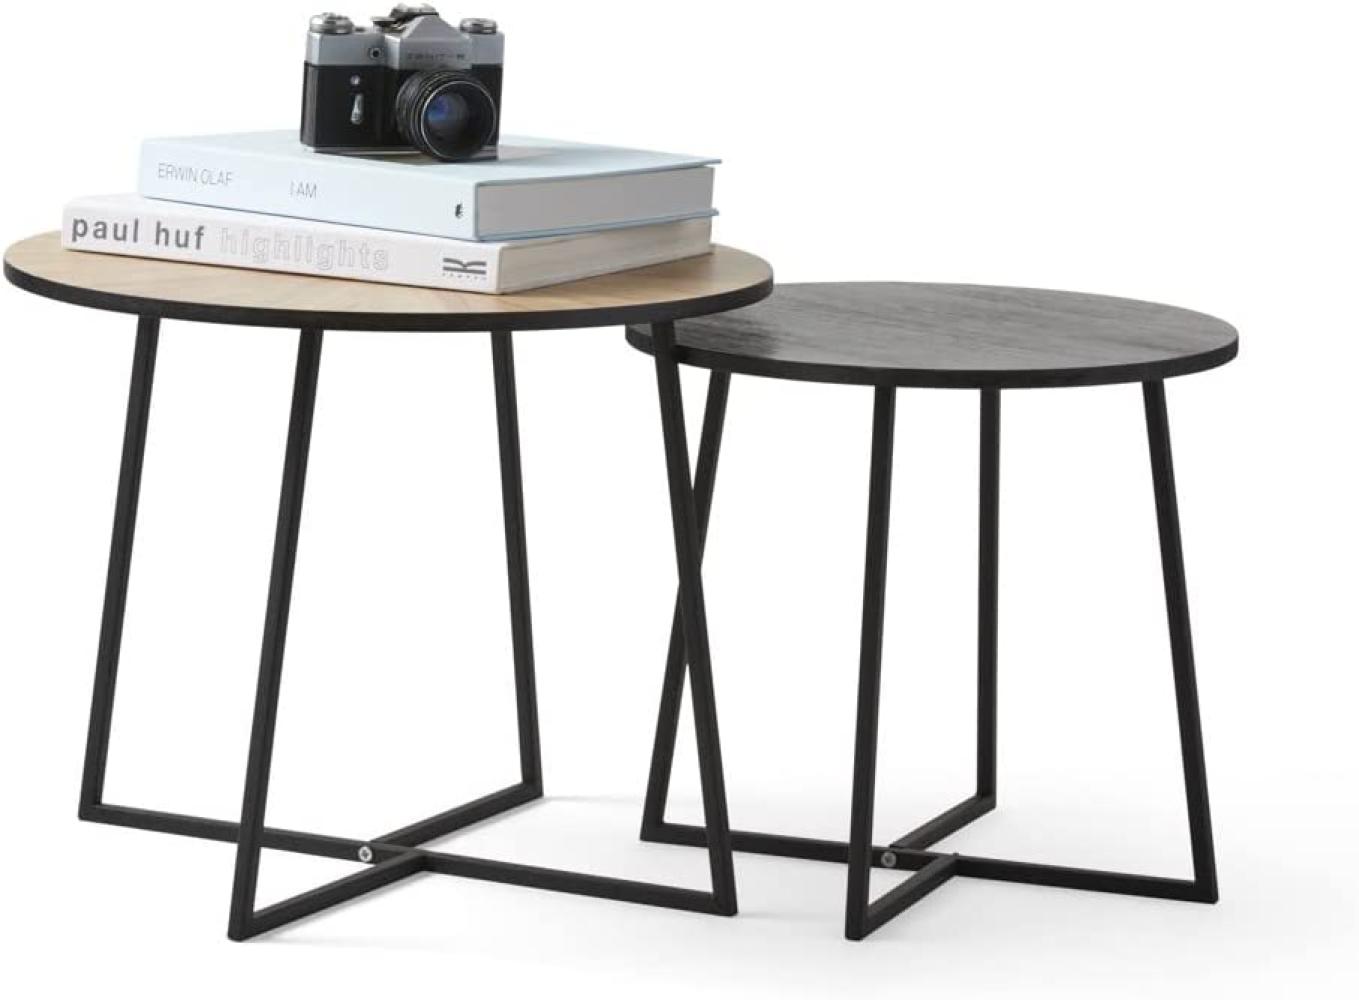 LIFA LIVING 2er Set runde Beistelltische aus MDF Holz und Metall in schwarz und braun, 2X Stilvolle Beistelltische im modernen Design, 2er-Set Couchtische Bild 1